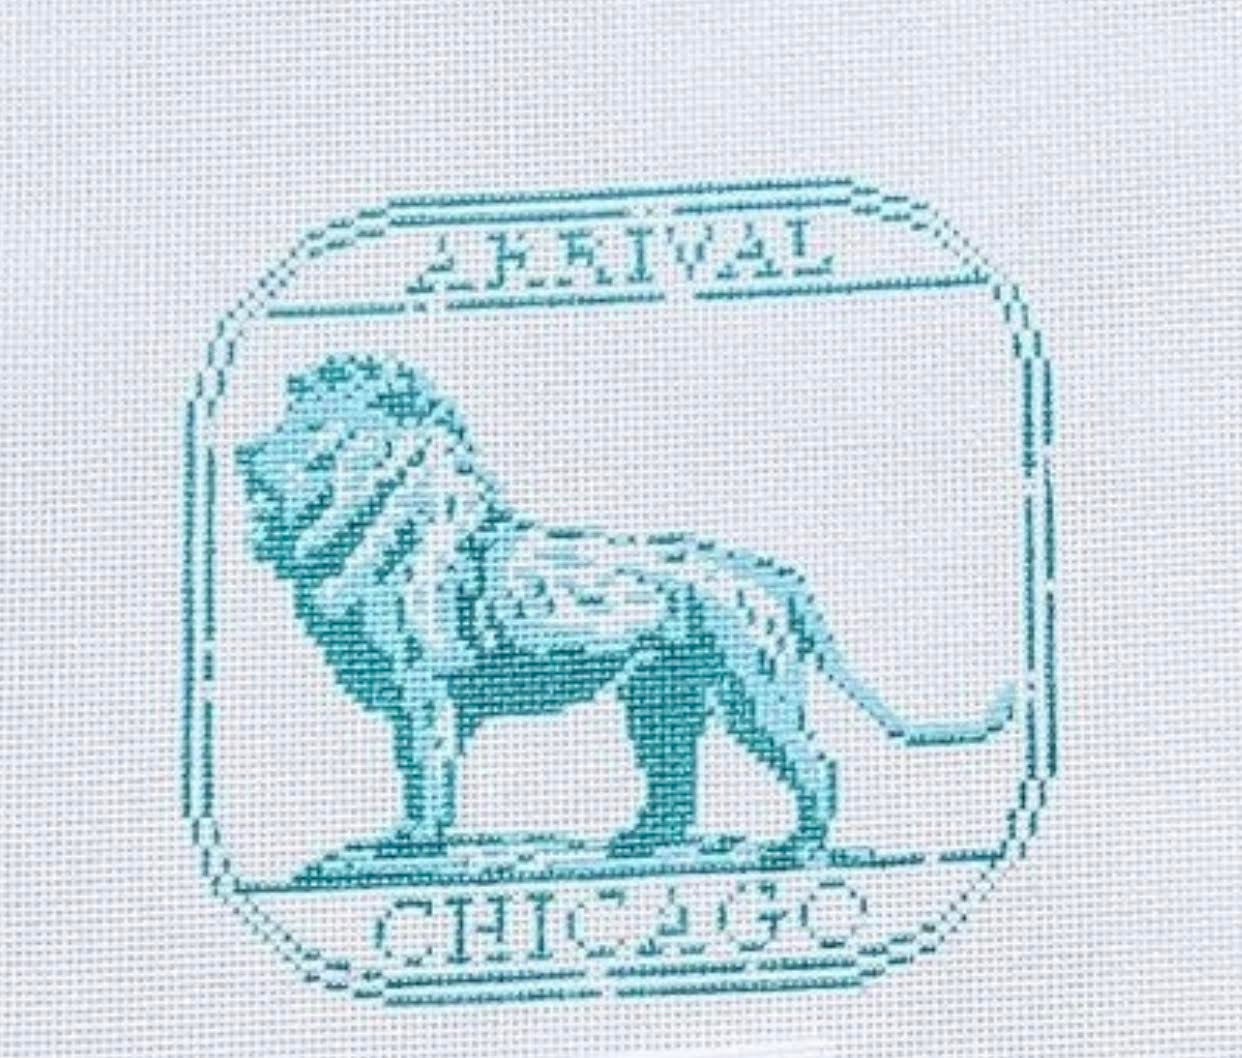 Audrey Wu Passport Stamp - Chicago